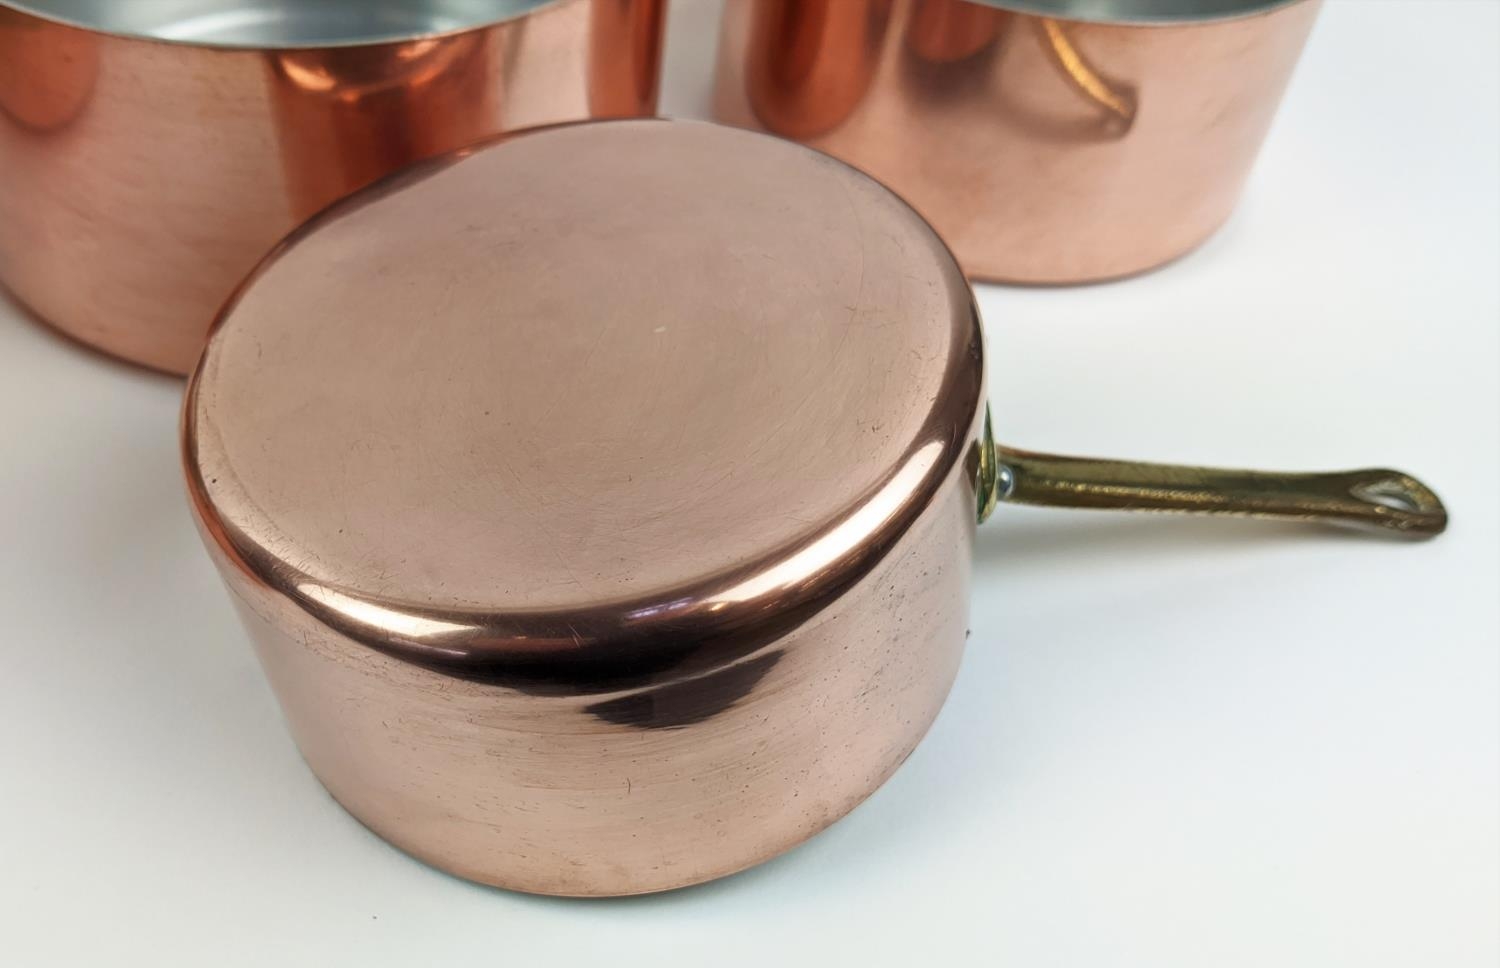 BATTERIE DE CUISINE, a graduated set of twelve, copper pans, with brass handles. (12) - Image 7 of 8